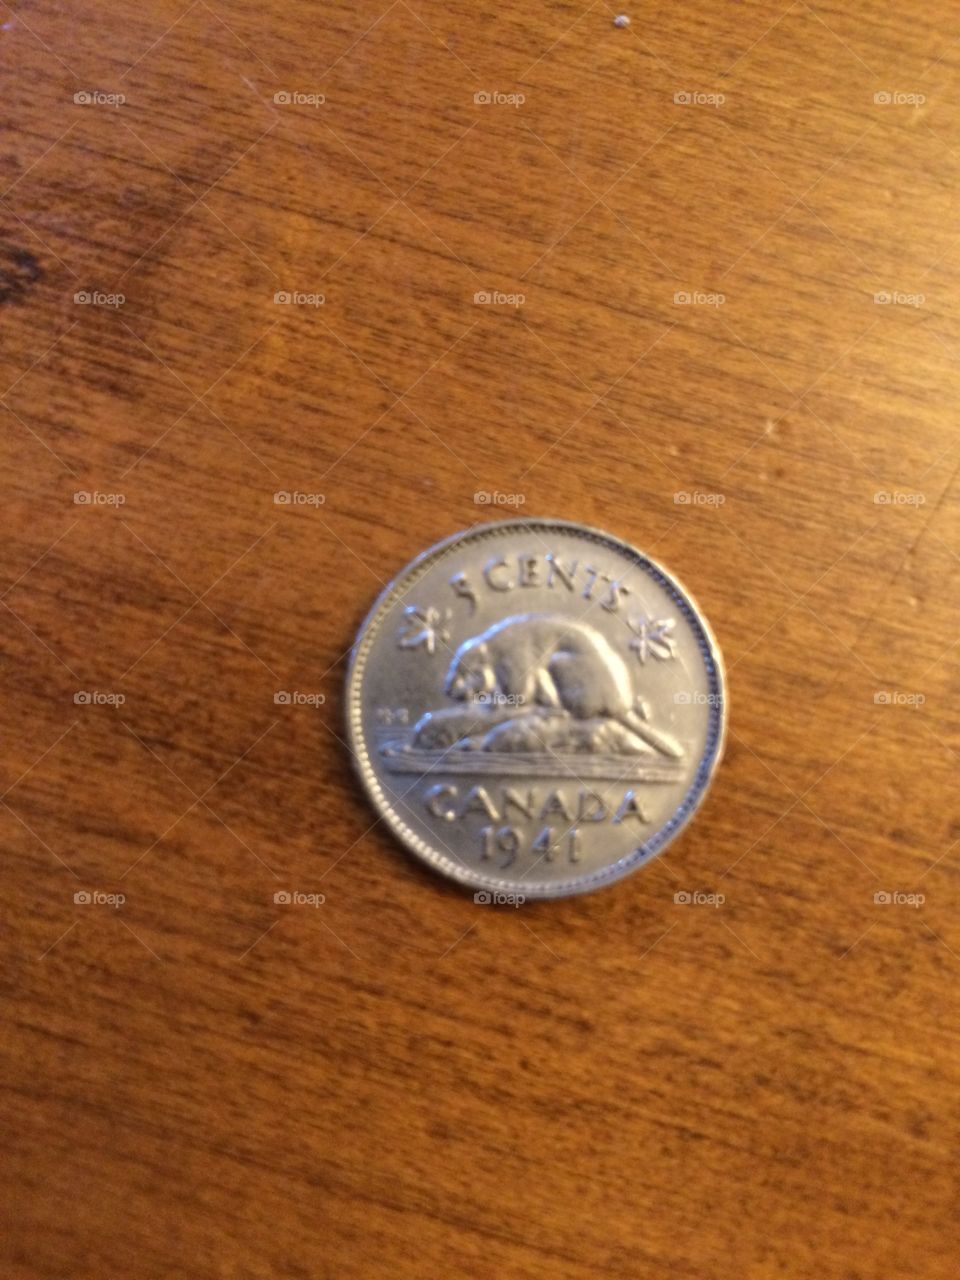 1941 nickel 